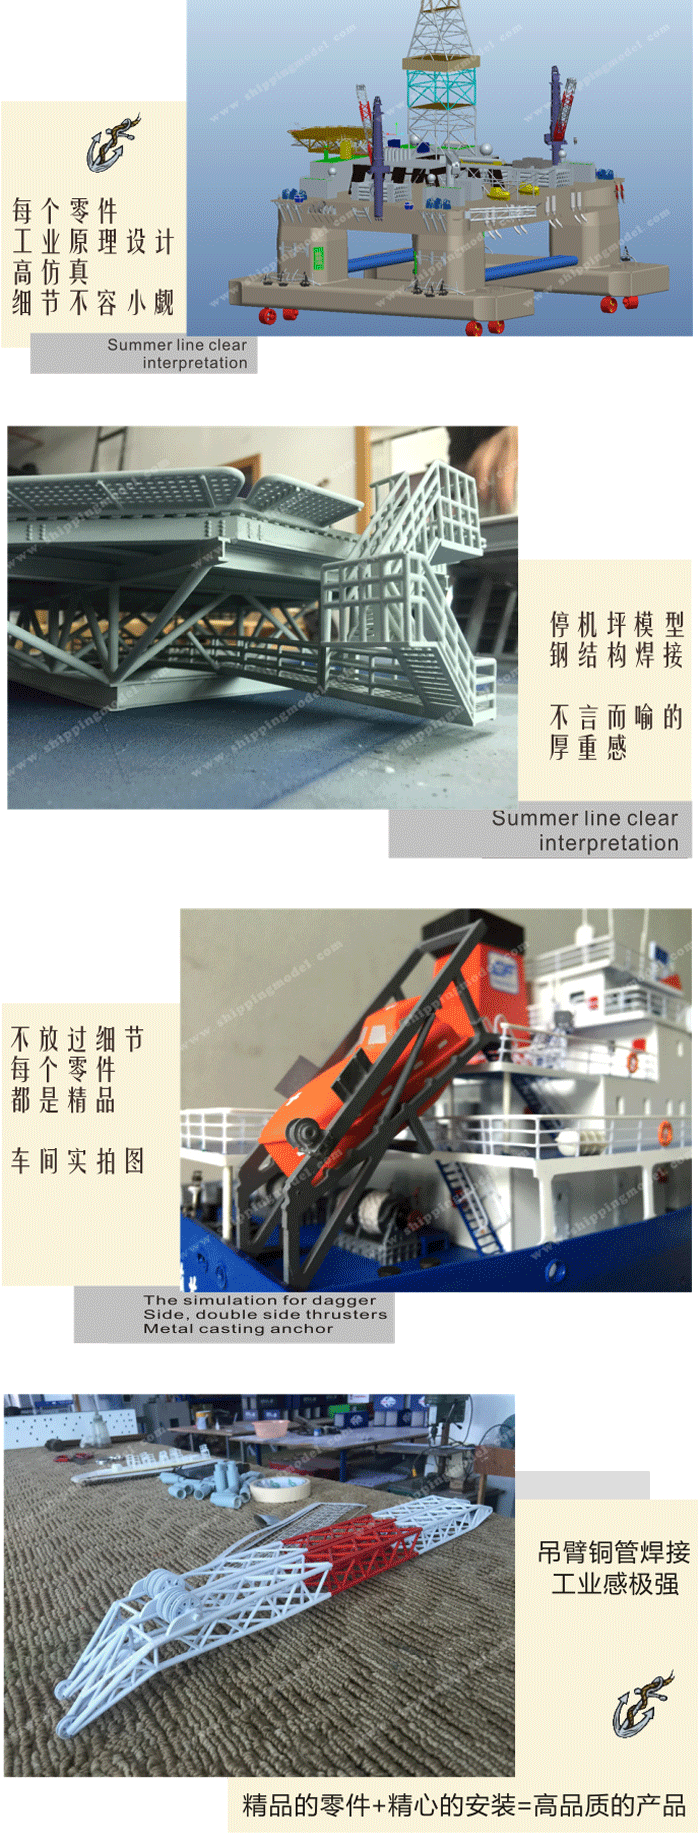 定制船模_40cm游艇模型定制C_海艺坊模型工厂